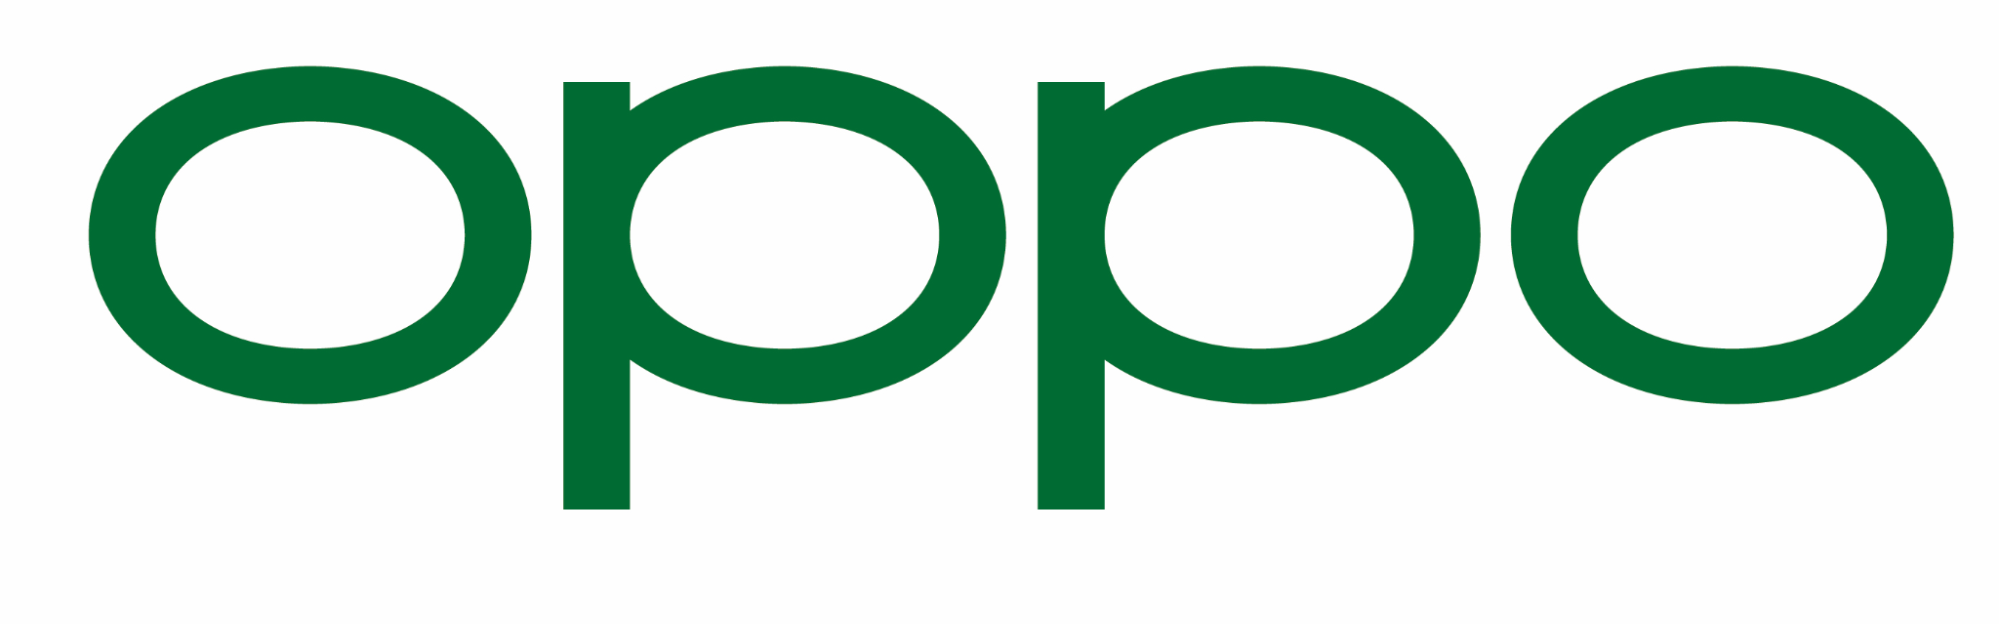 brand logo of Oppo-Marketing mix of Oppo| IIDE